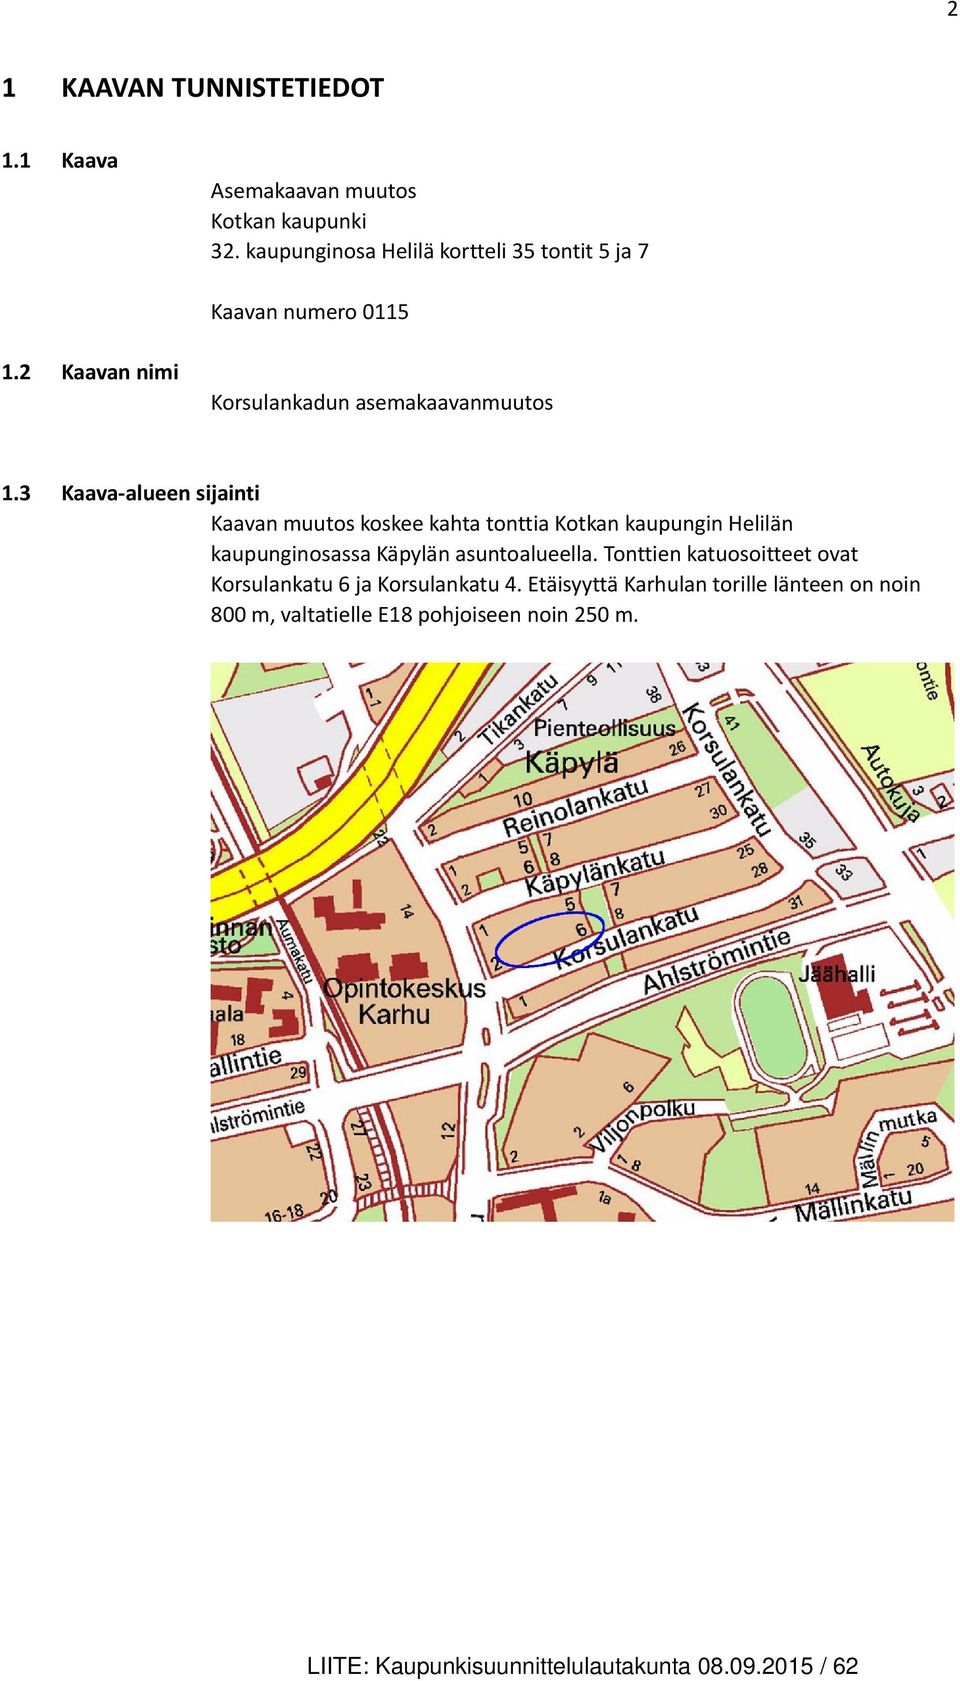 3 Kaava-alueen sijainti Kaavan muutos koskee kahta tonttia Kotkan kaupungin Helilän kaupunginosassa Käpylän asuntoalueella.